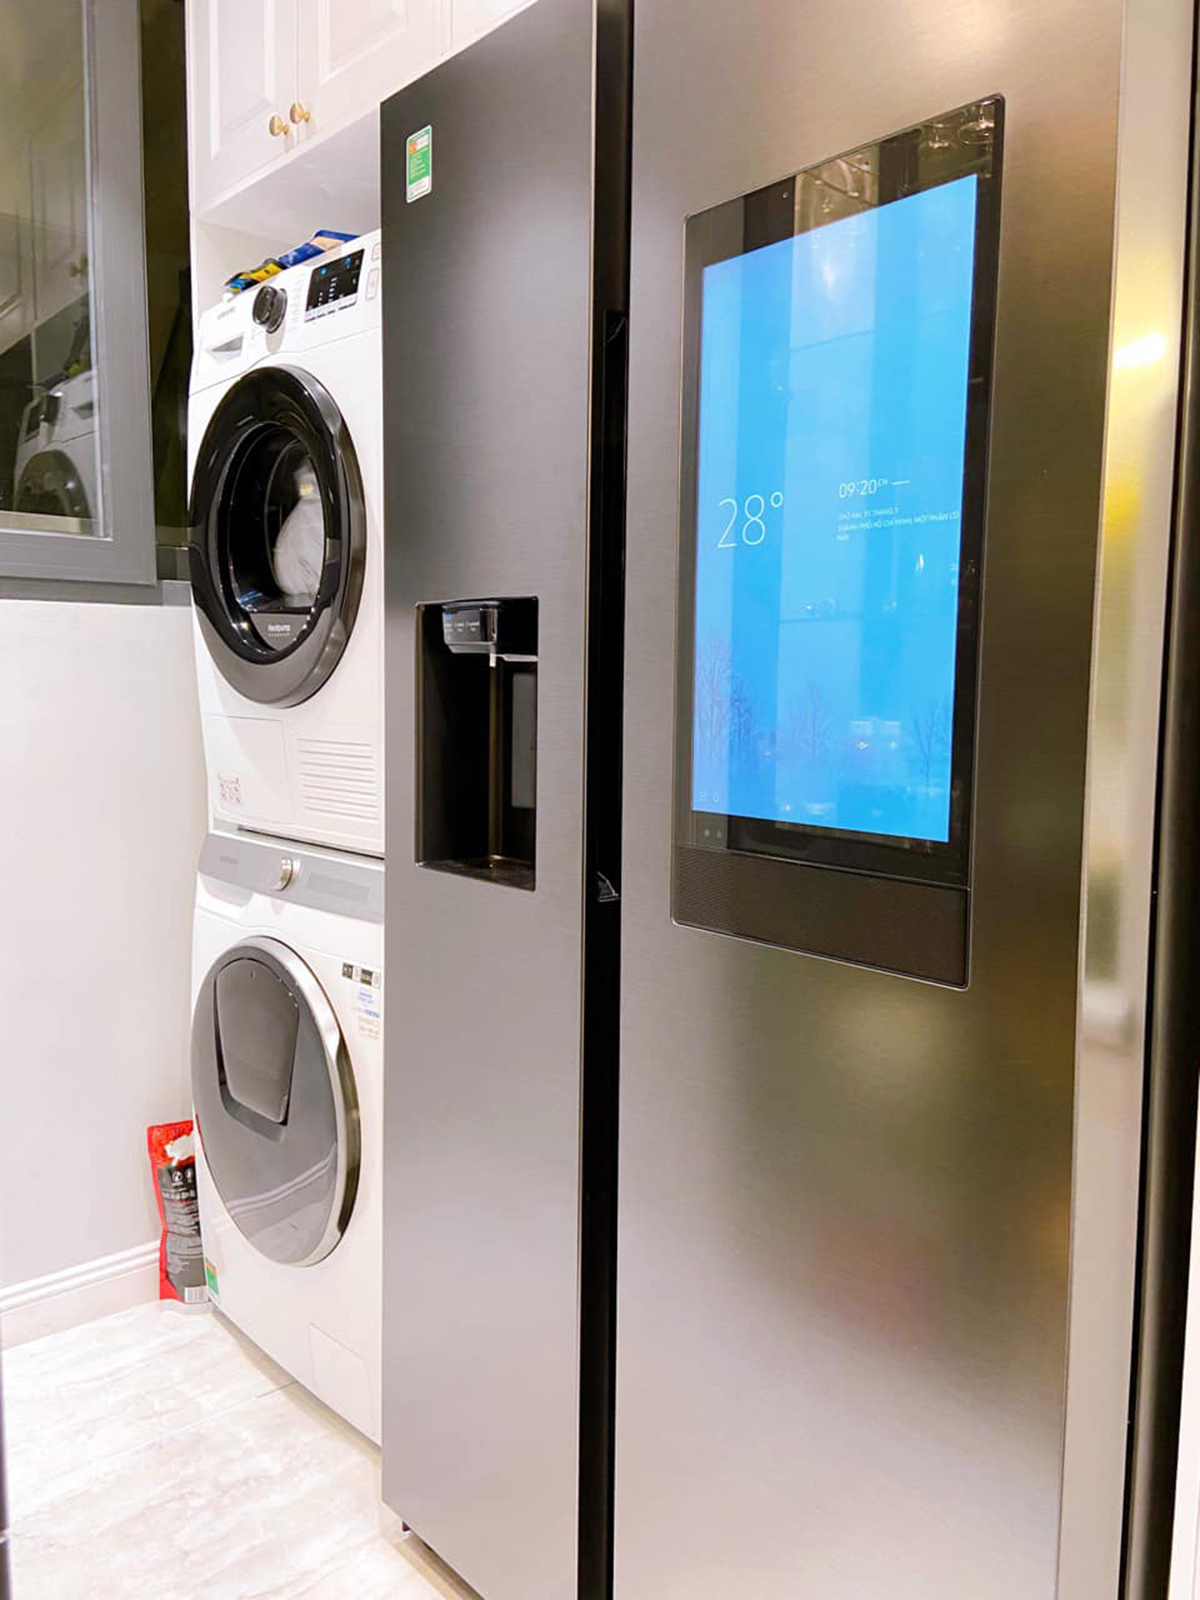 Tủ lạnh, máy giặt, máy sấy đều đã được Văn Thanh sắm đầy đủ. Văn Thanh sẵn sàng đầu tư các trang thiết bị hiện đại cho căn hộ của mình.